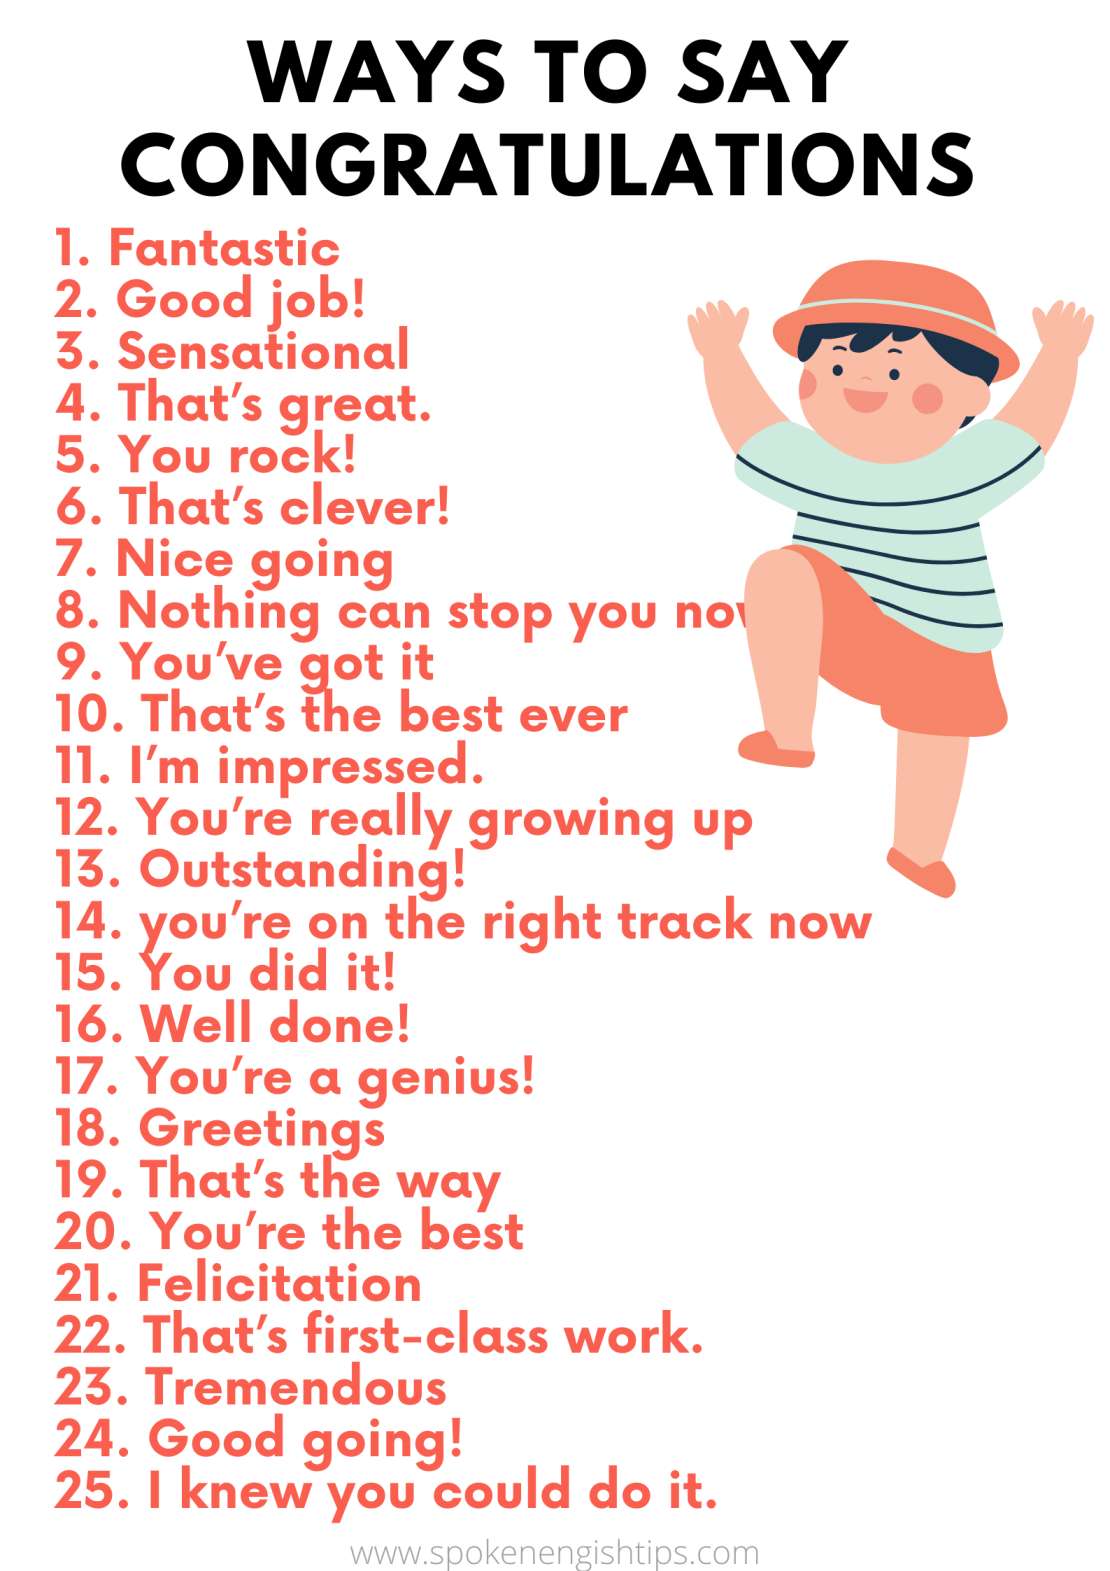 25 ways to say congratulation